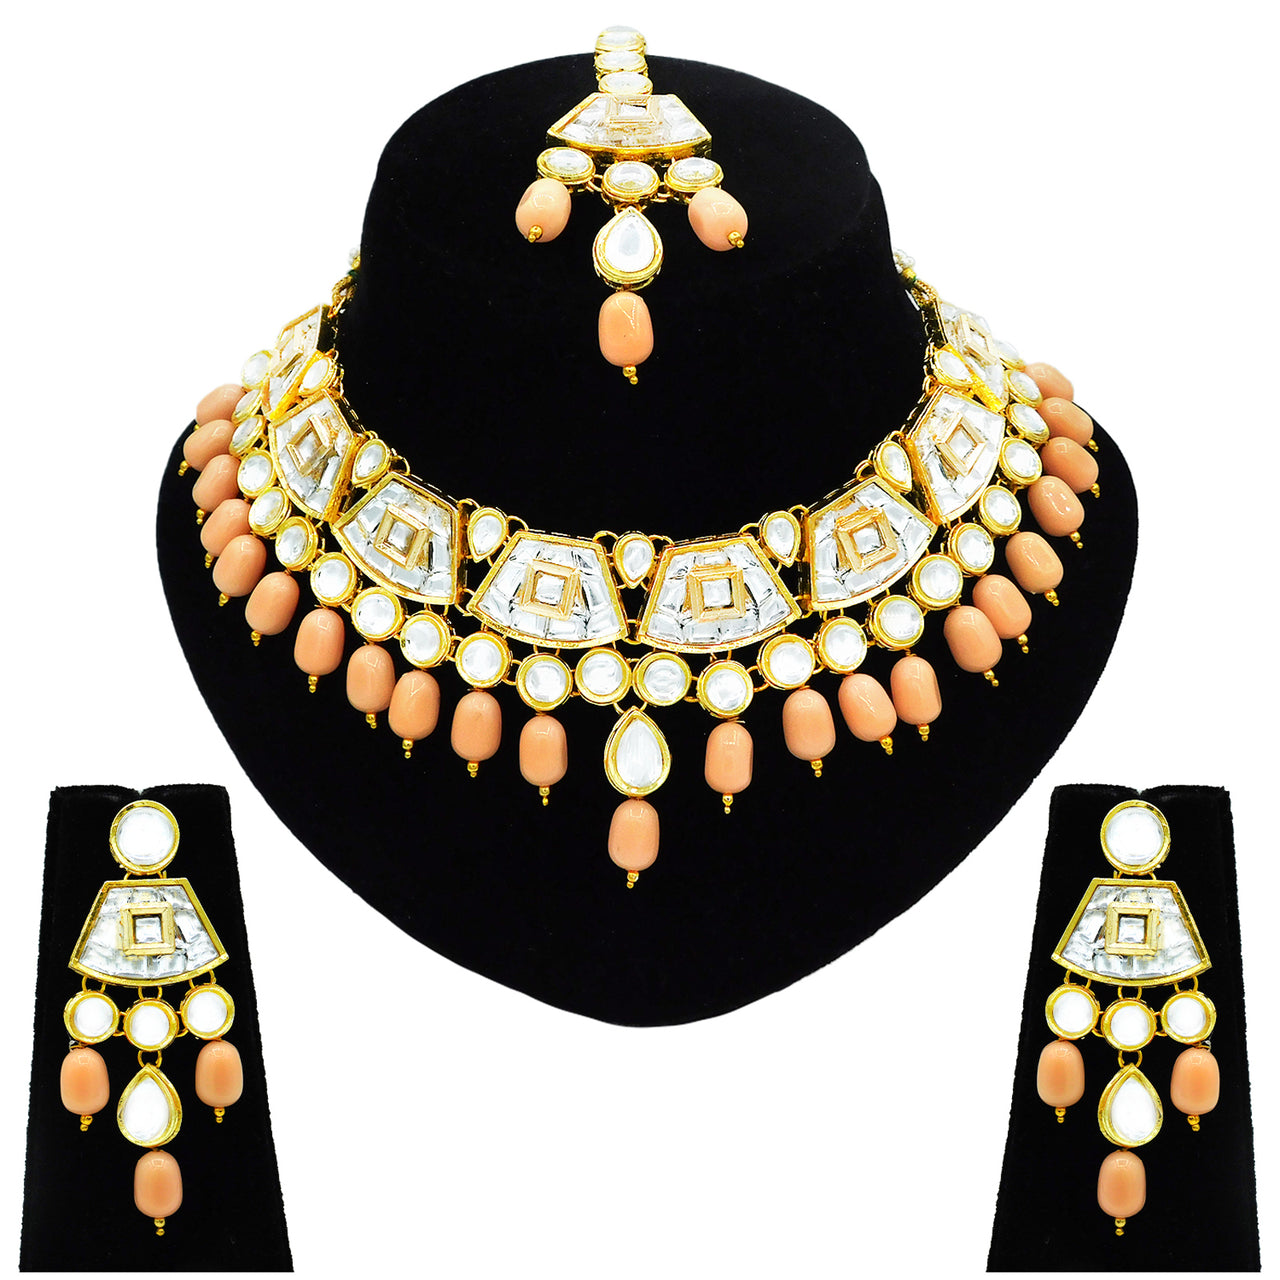 Sujwel Gold Kundan Choker Necklace For Women (08-0106) - Sujwel